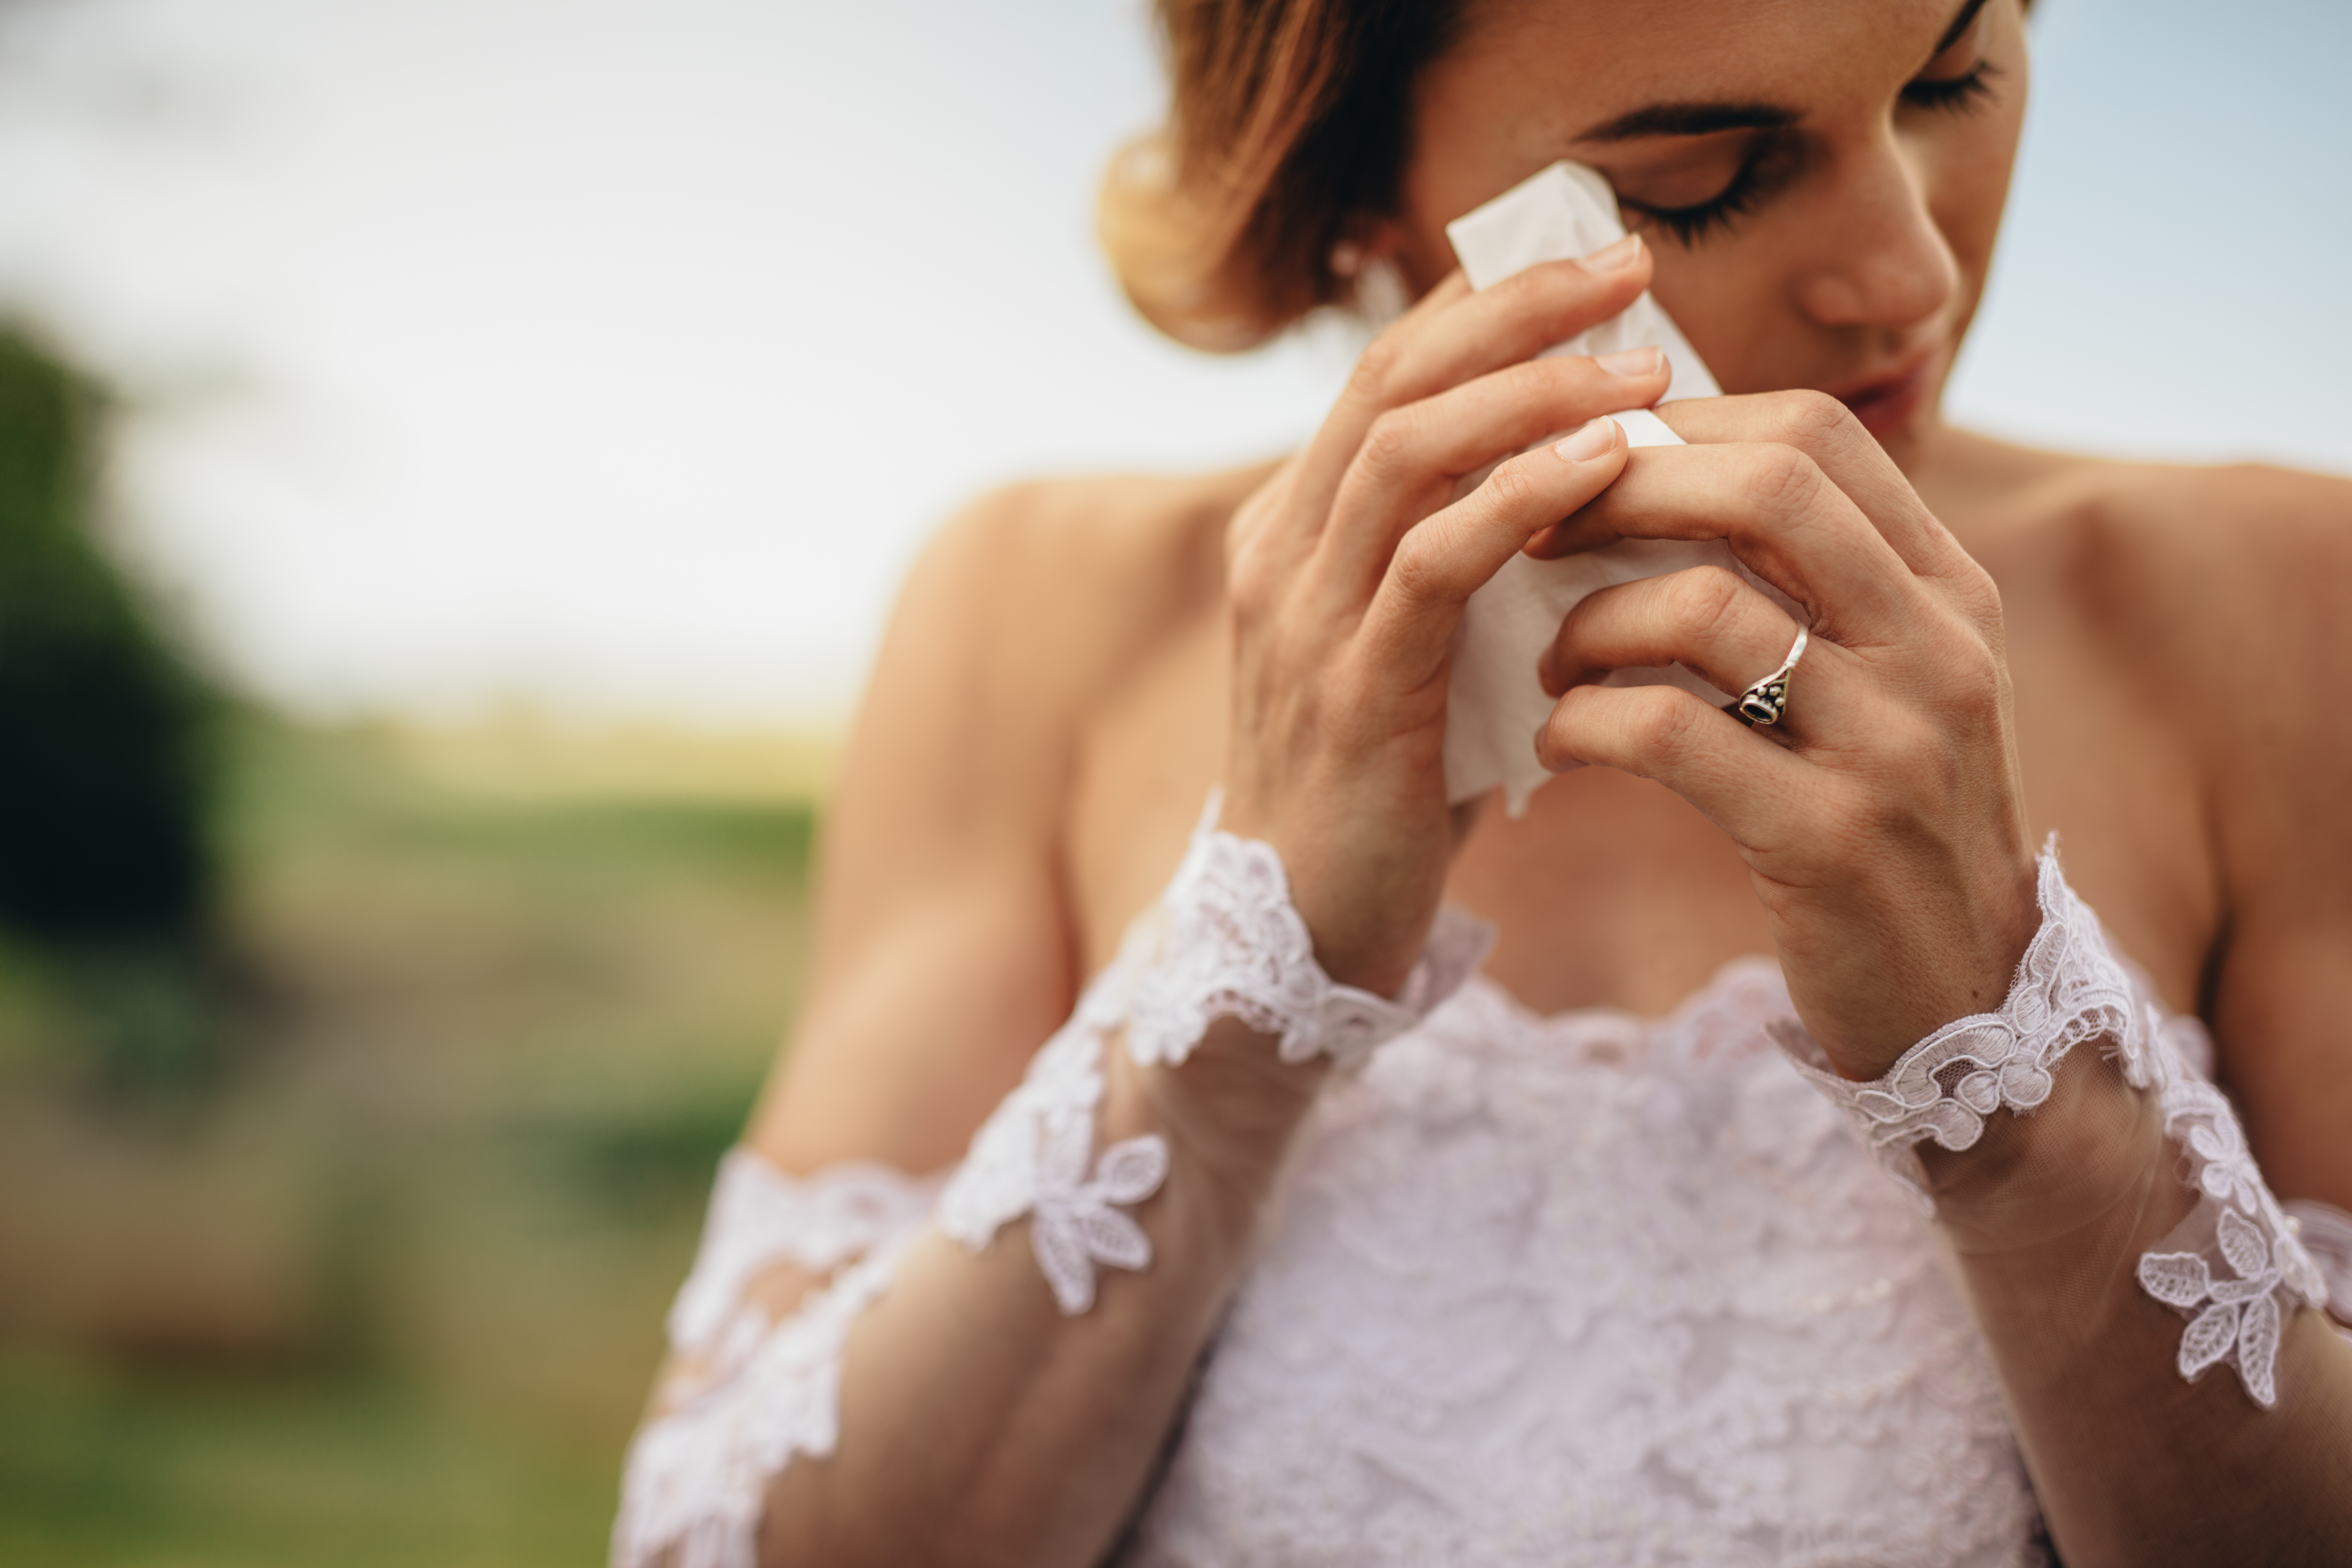 Una novia llorando en su gran día | Fuente: Shutterstock